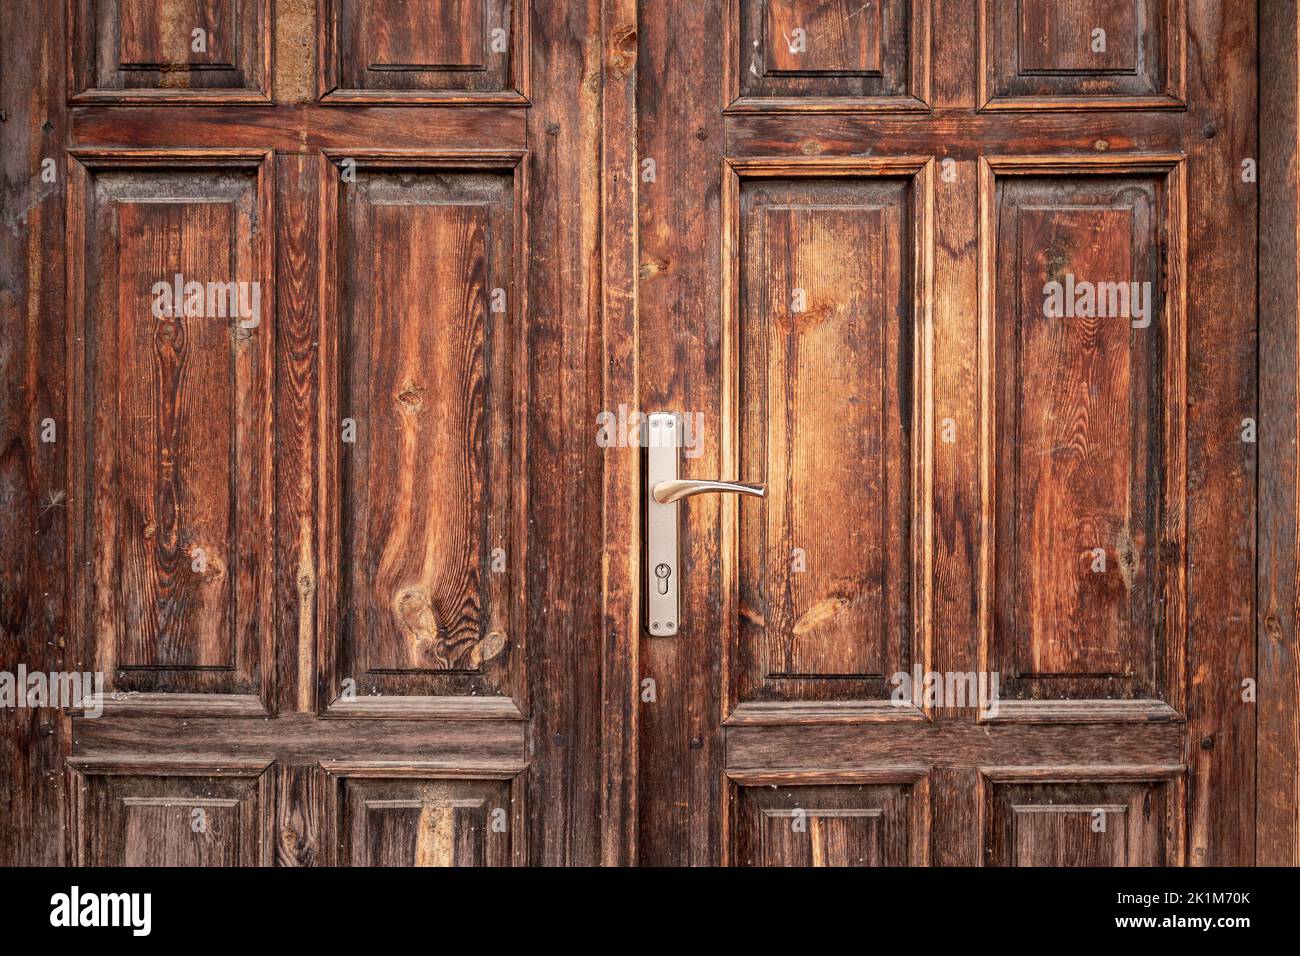 Antico, rustico, classico, marrone, porta in legno con maniglia in ferro. Texture e sfondo delle porte. Foto di alta qualità Foto Stock